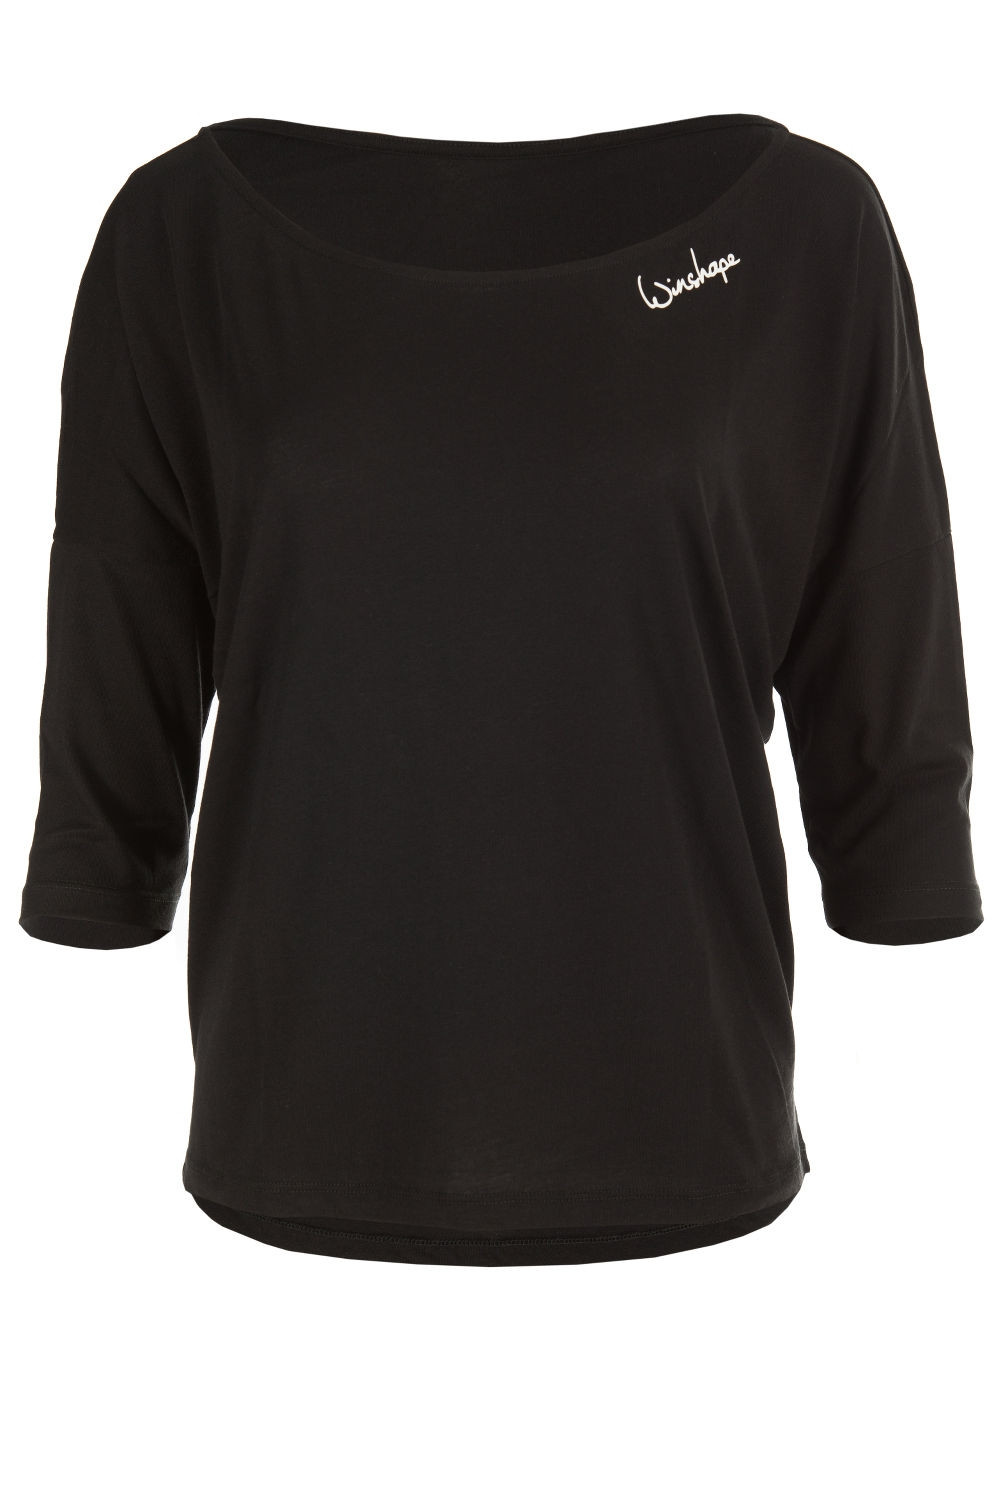 Ultra leichtes Modal-3/4-Arm Shirt Dance MCS001, schwarz, Winshape Style